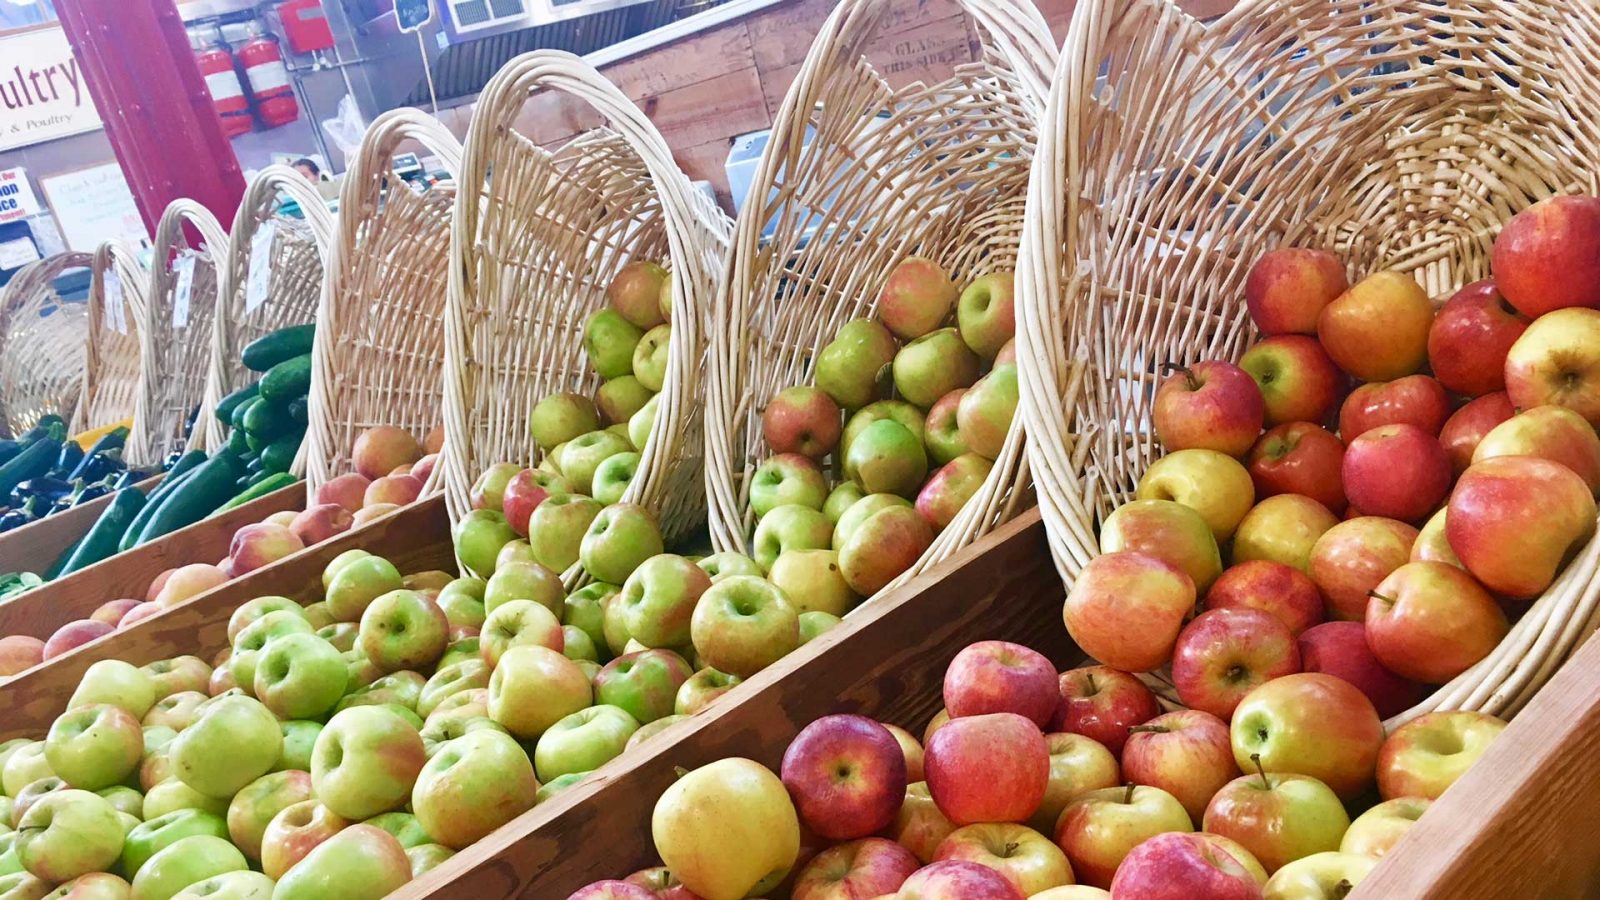 It’s Apple Season in the Lebanon Valley